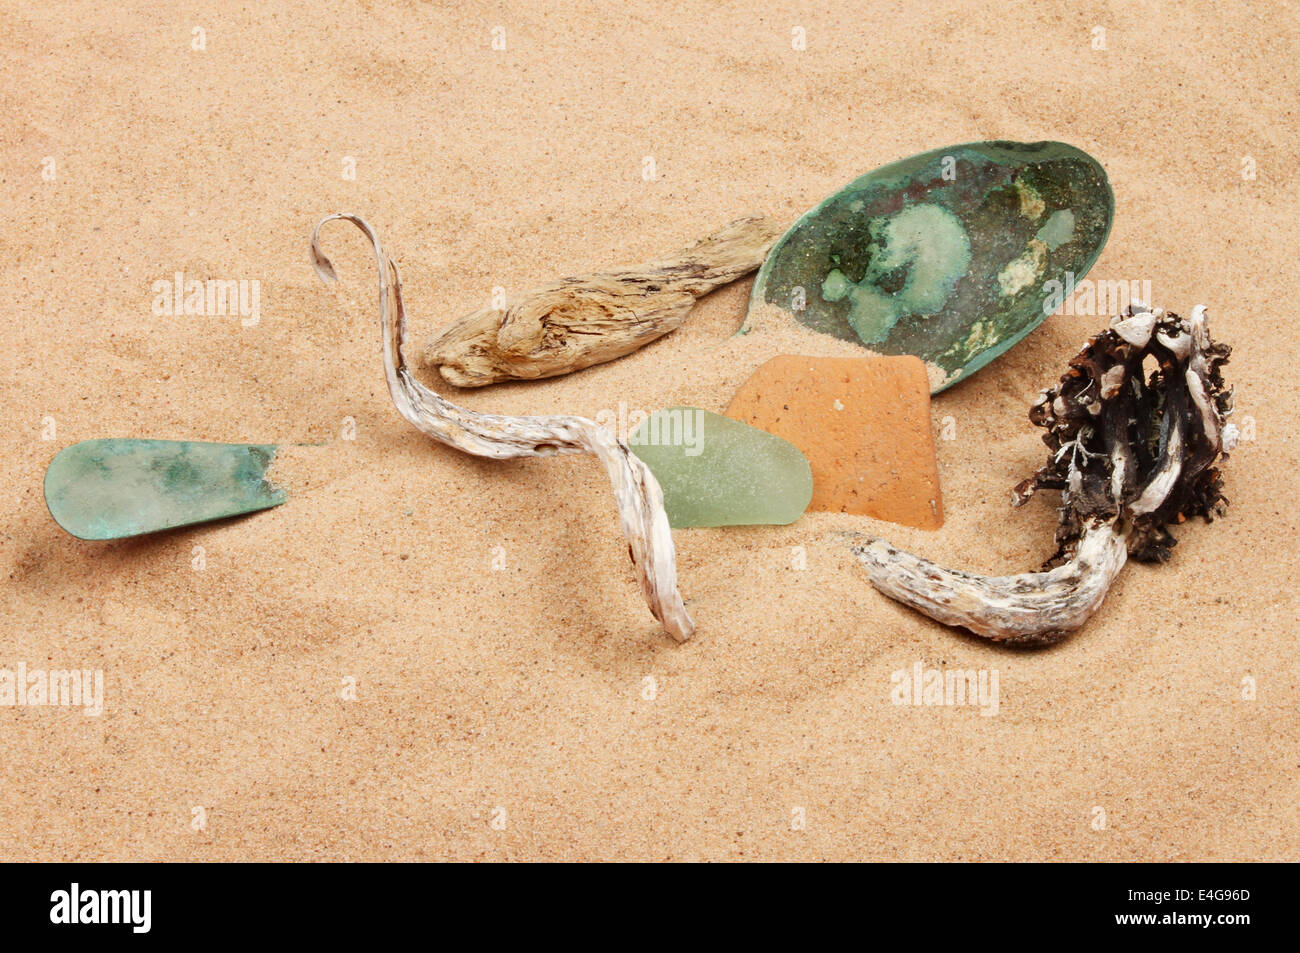 Ancora la vita di detriti sulla spiaggia in sabbia Foto Stock